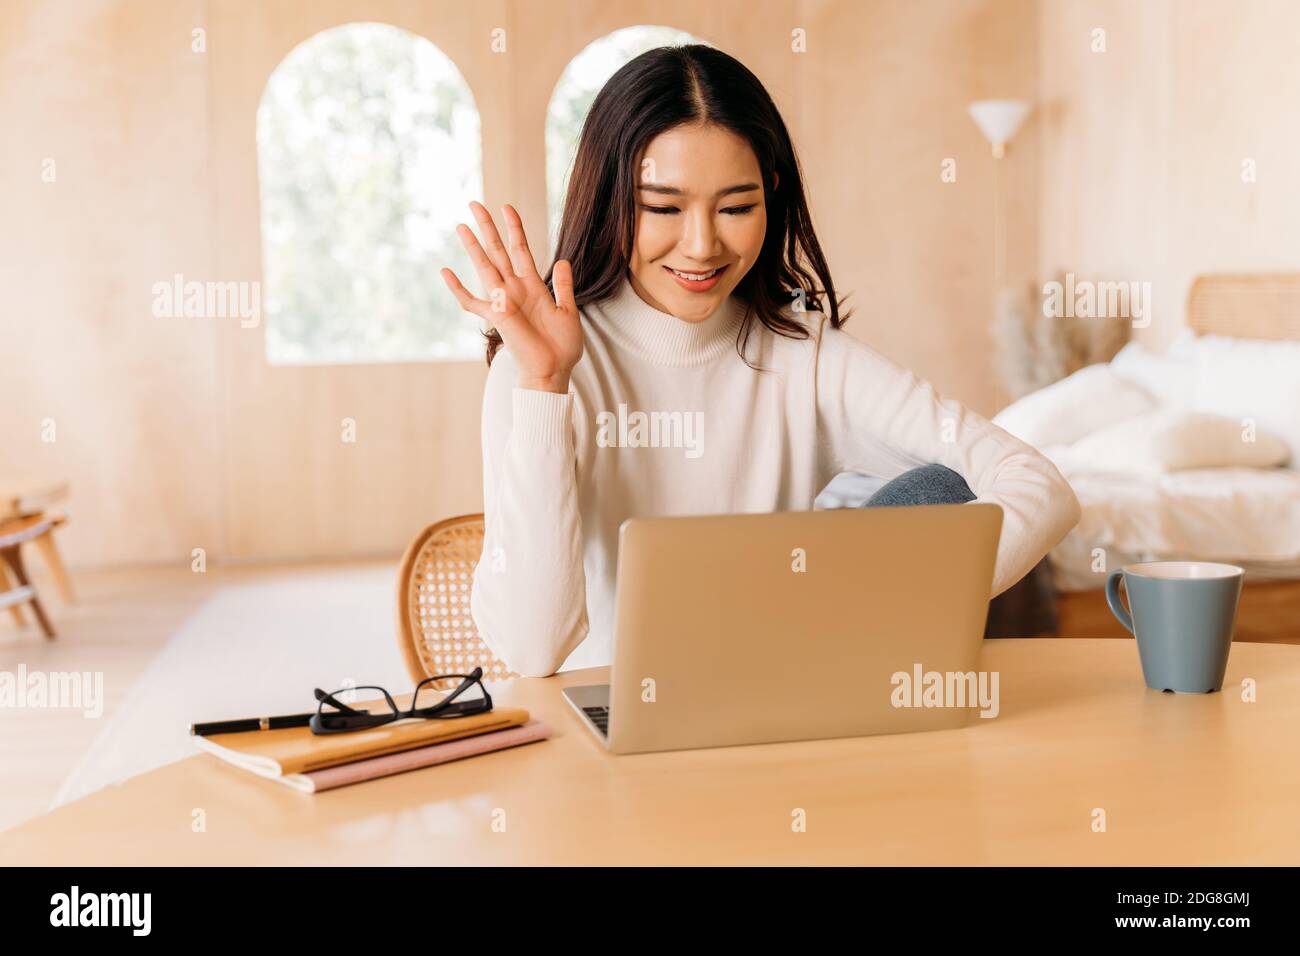 Junge Teenager asiatische Frau tragen Pullover mit hübschen Lächeln winken auf jemanden in Laptop in gemütlichen Zimmer. Glückliche und stilvolle Mädchen Videoanrufe und Konferenzen. Winter Business Portrait Lifestyle. Speicherplatz kopieren Stockfoto